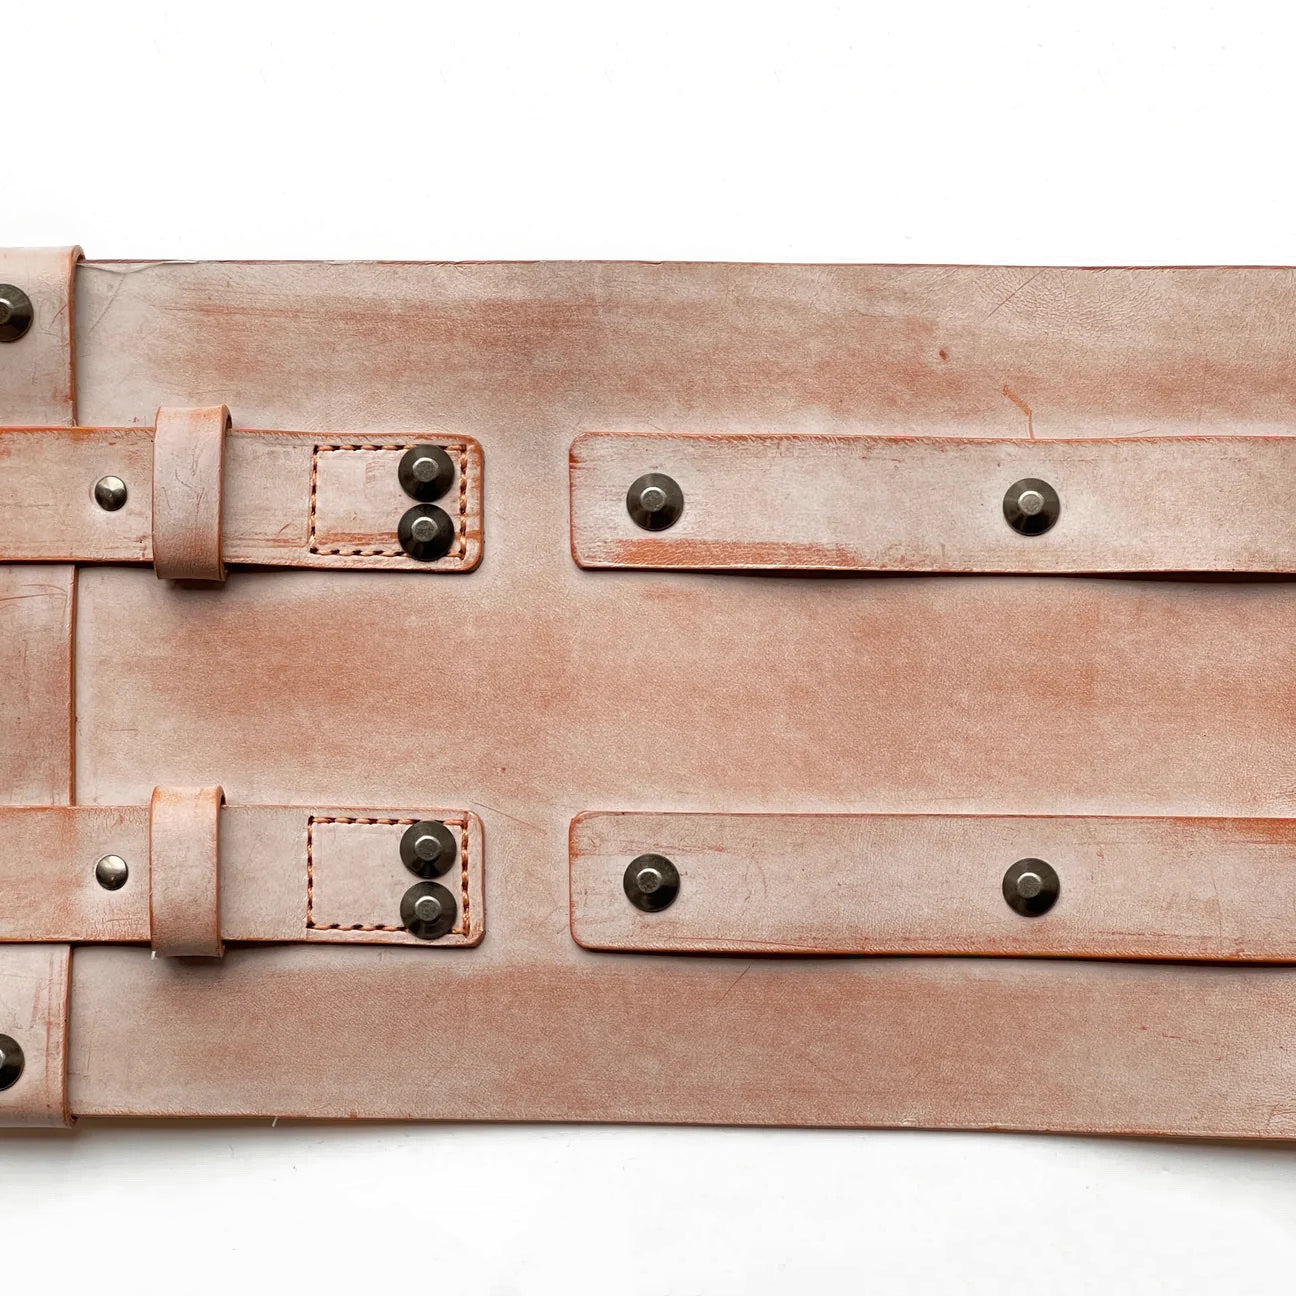 Obi belt "Aging leather natural"